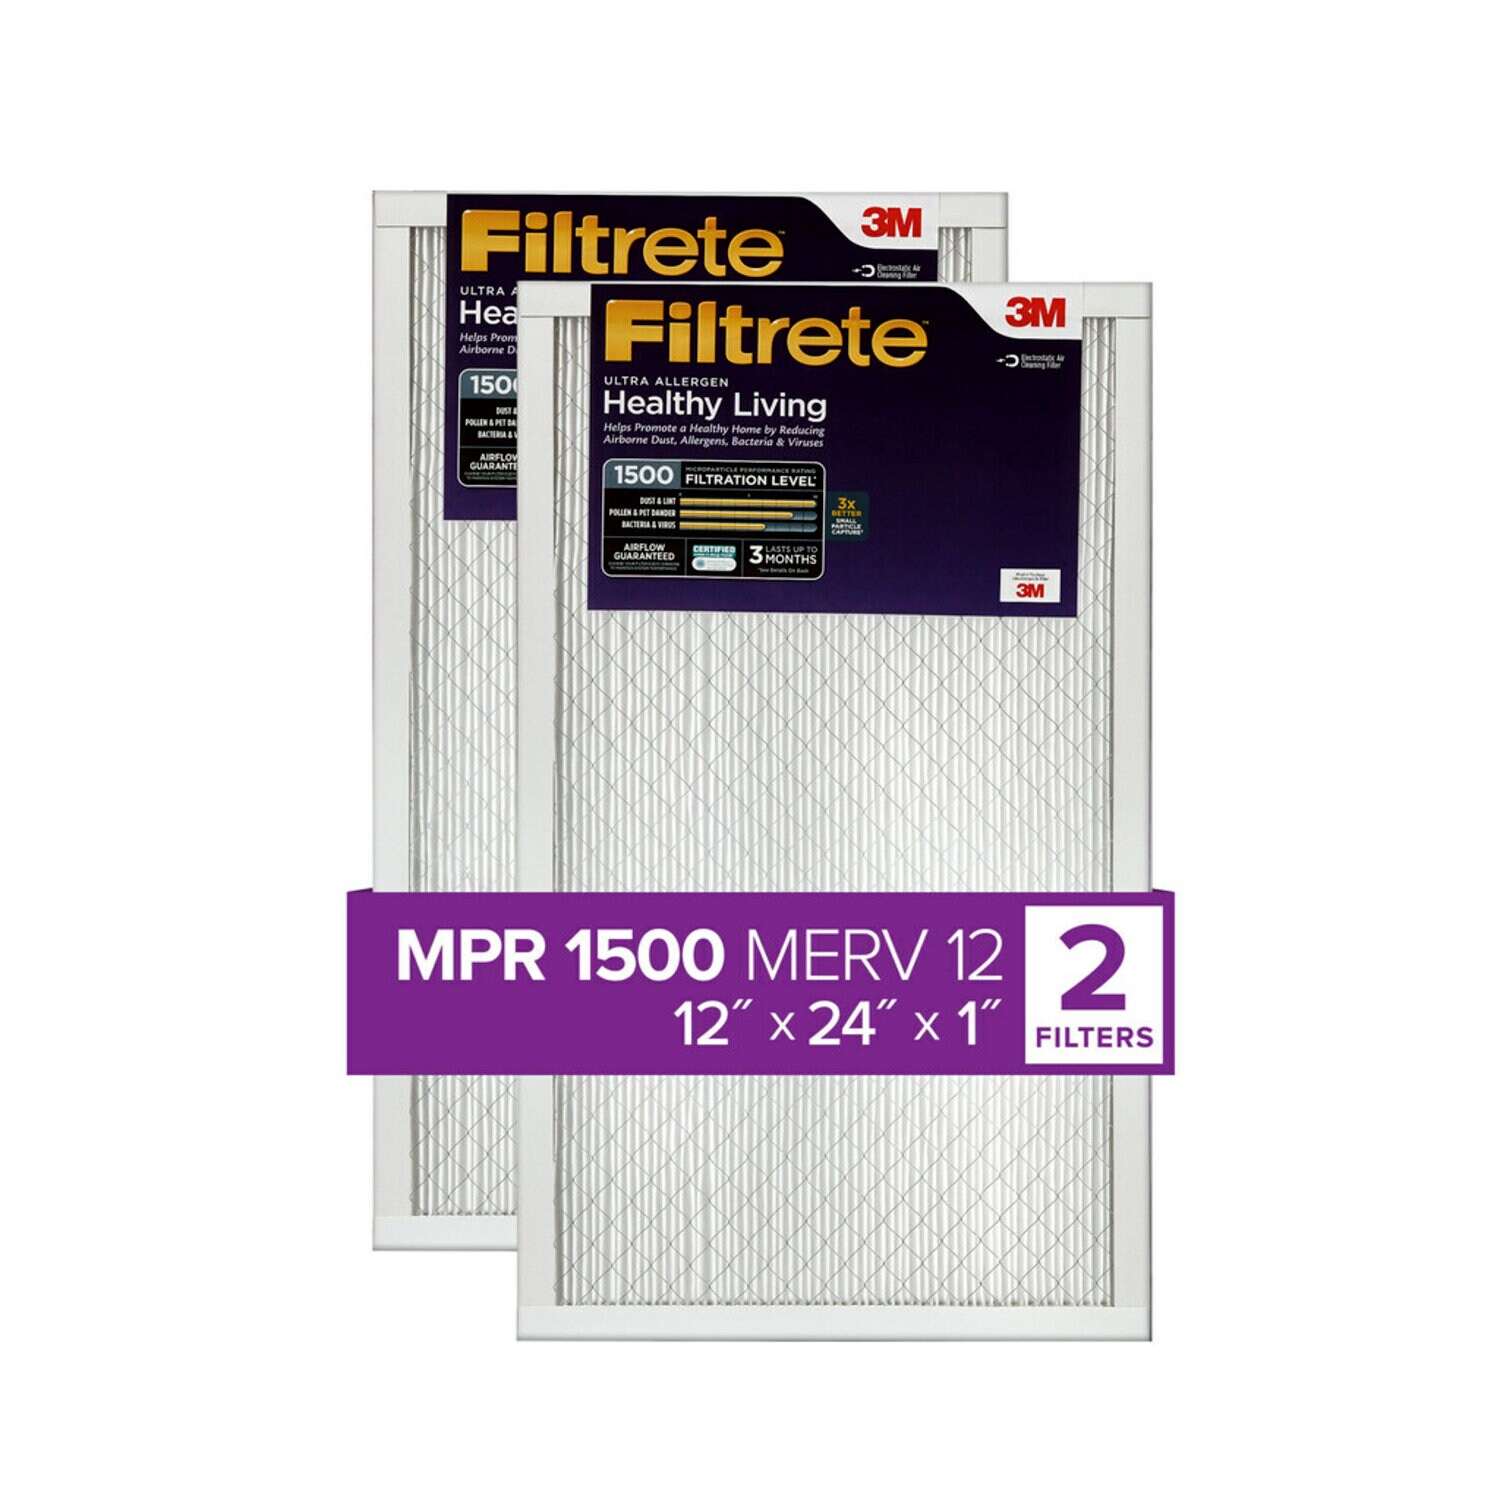 7100212072 - Filtrete Ultra Allergen Reduction Filter UR20-2PK-1E, 12 in x 24 in x 1 in (30.4 cm x 60.9 cm x 2.5 cm)